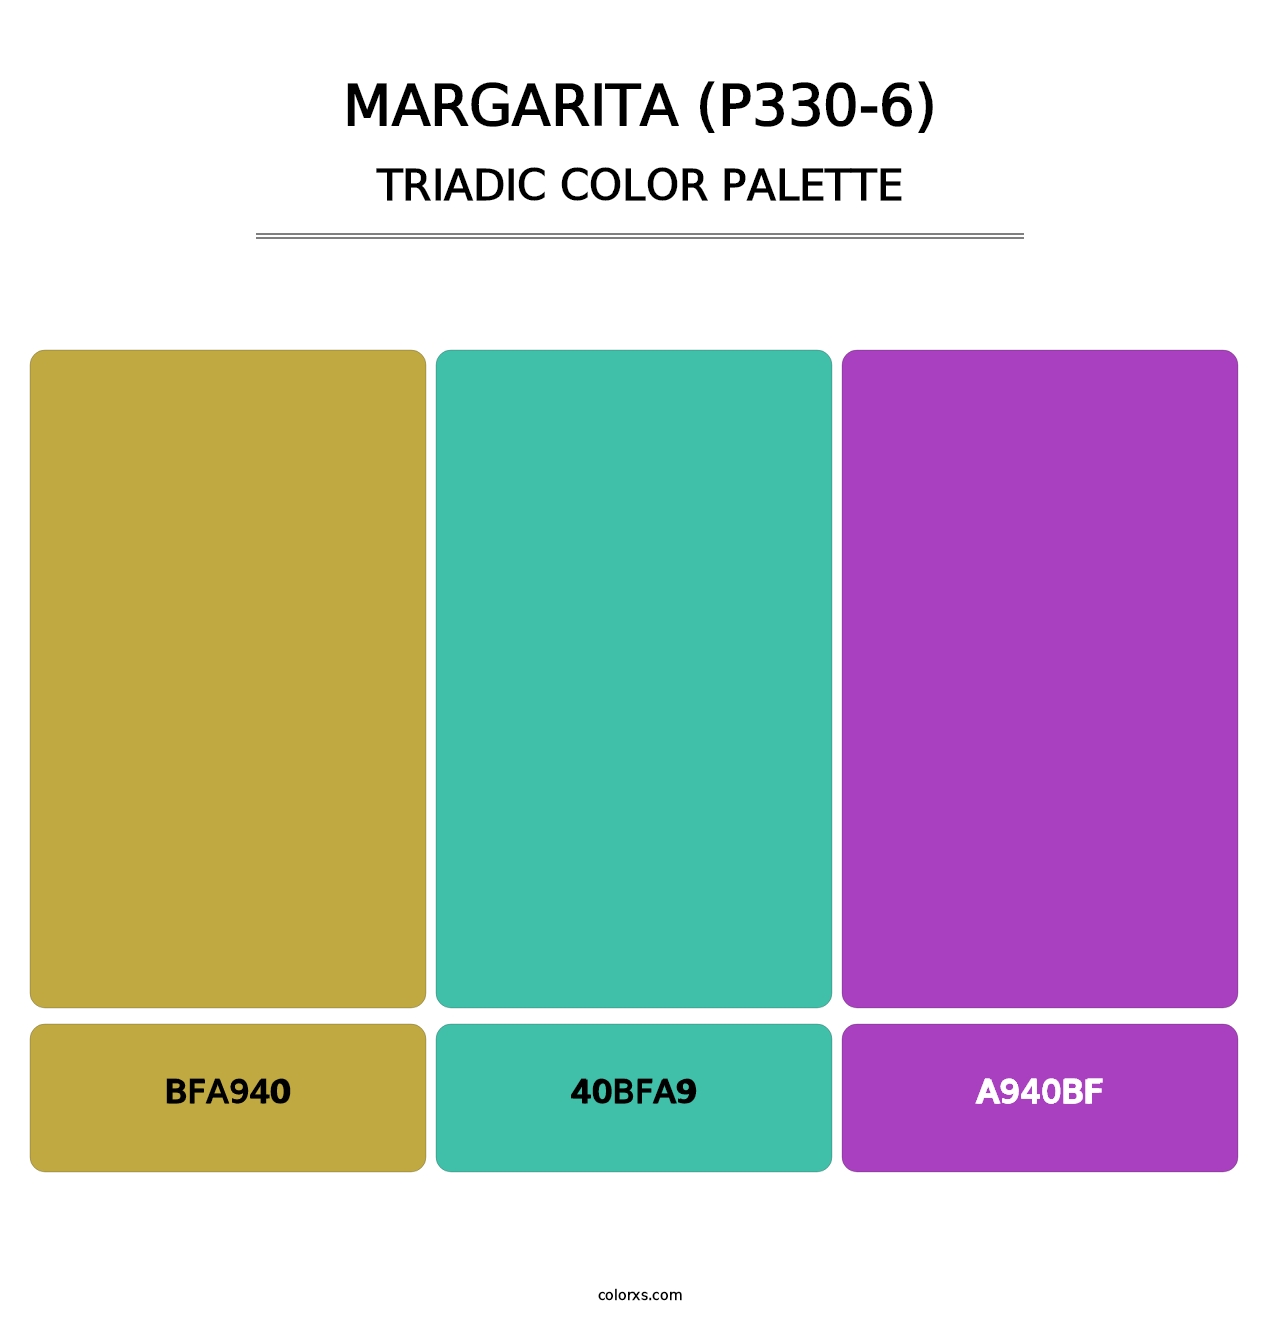 Margarita (P330-6) - Triadic Color Palette